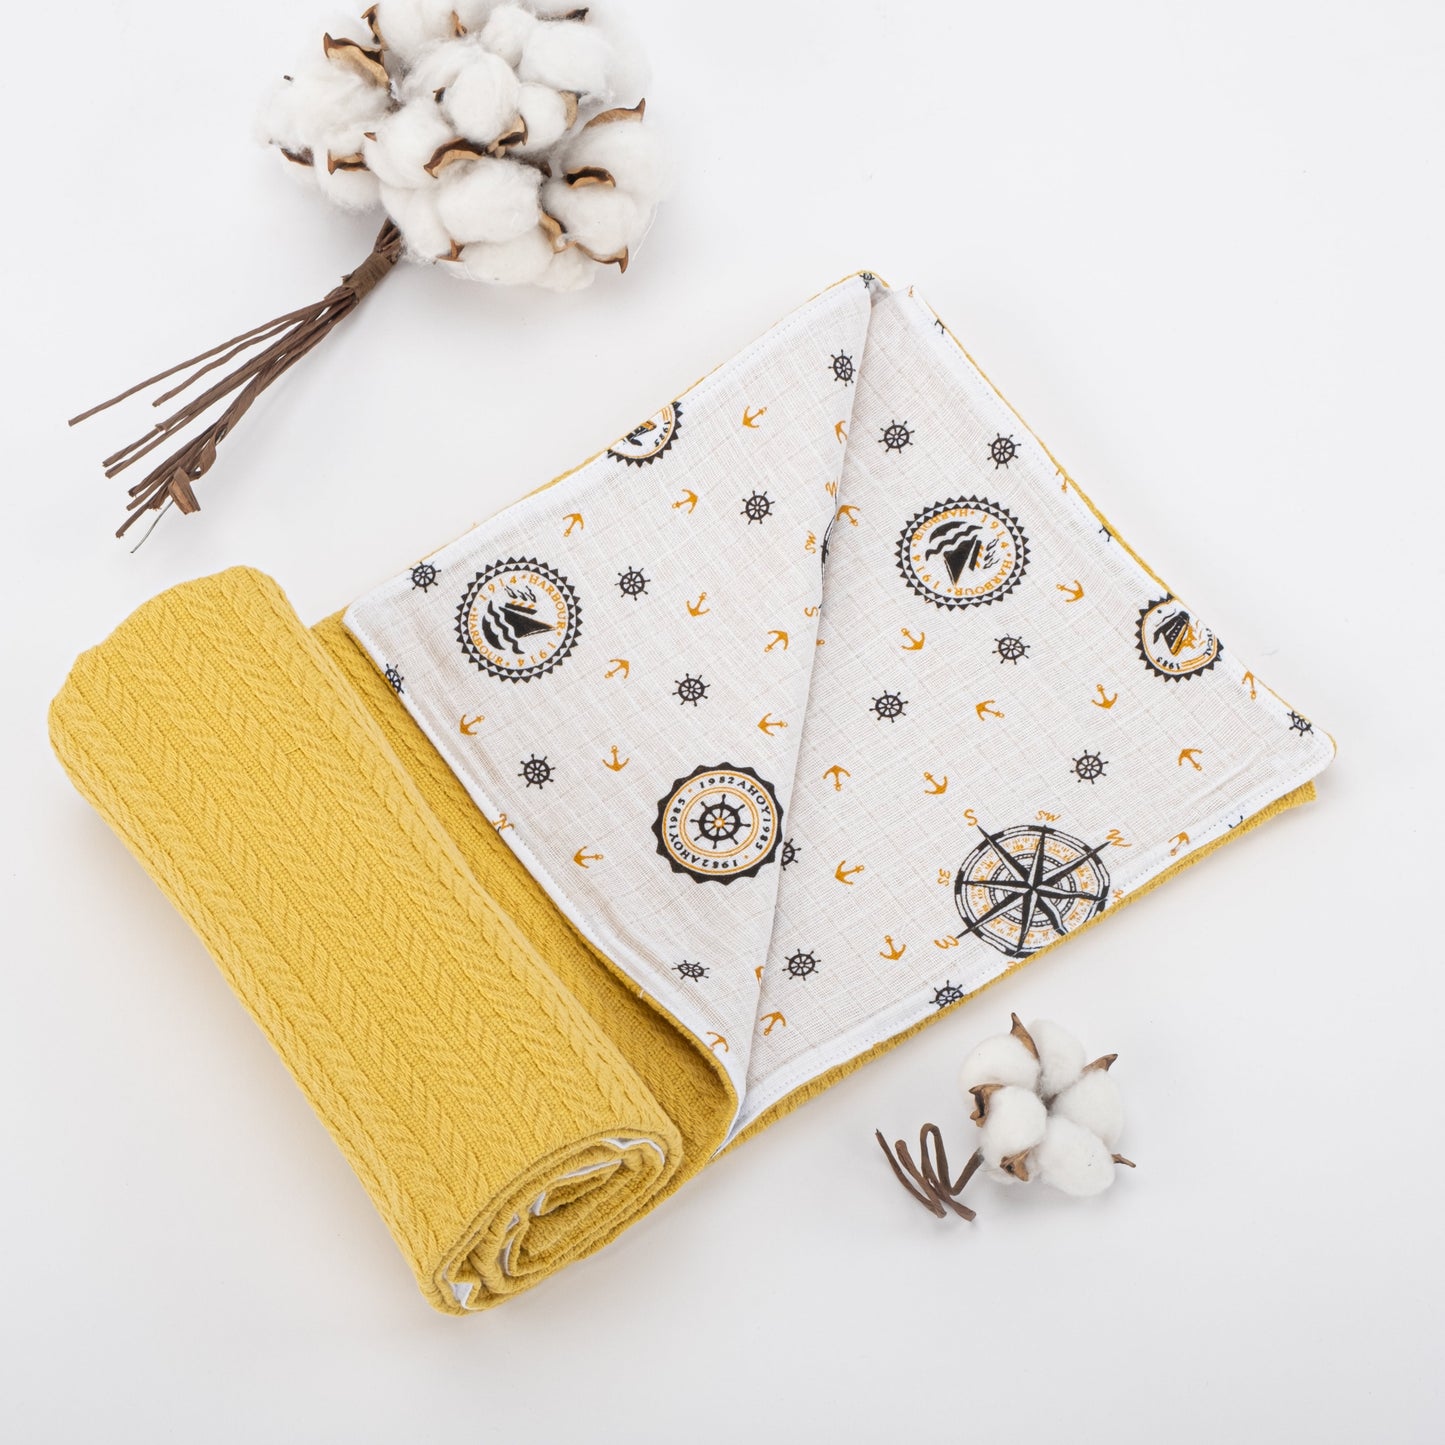 15 Piece Full Set - Newborn Sets - Mustard Knitting - Yellow Ship